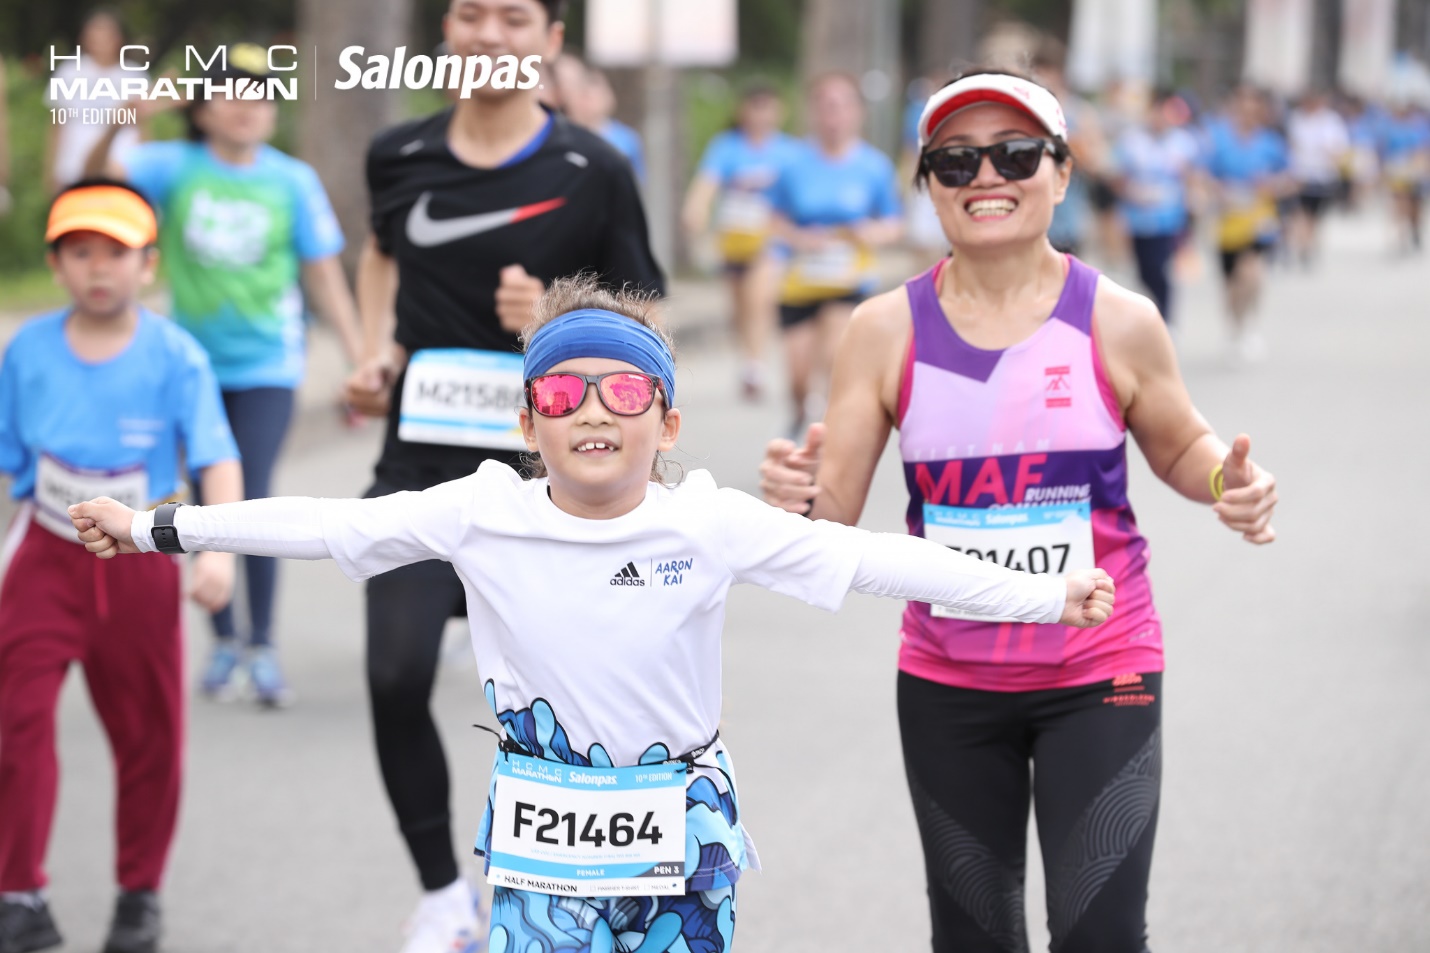 Runner nhí 8 tuổi đã chinh phục cự ly half marathon - Ảnh 1.